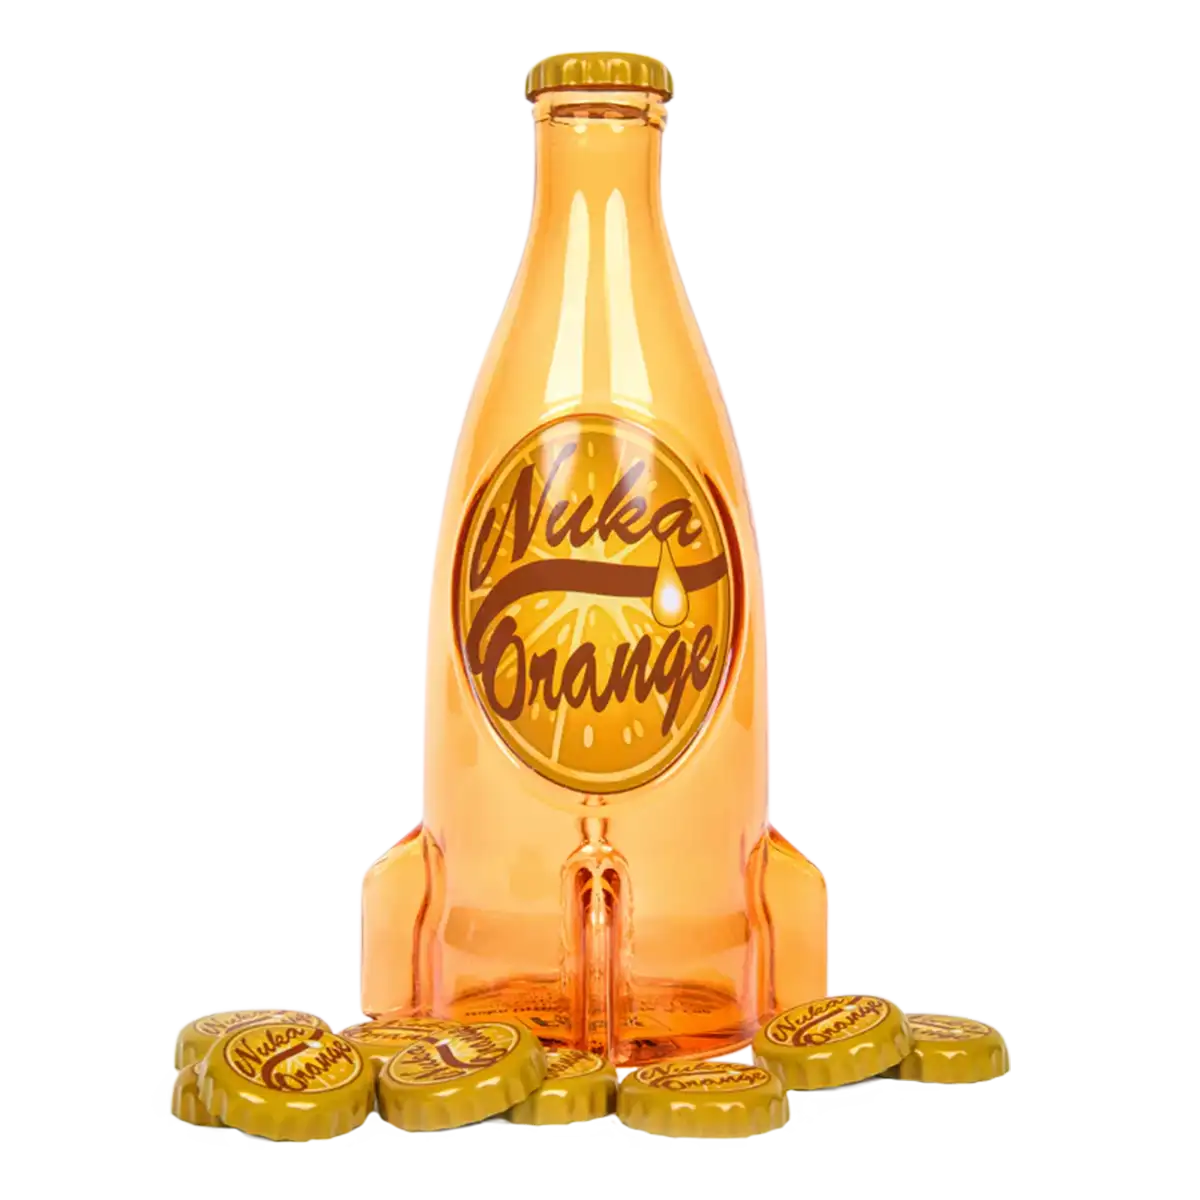 Fallout "Nuka Cola Orange" Glass Bottle and Caps